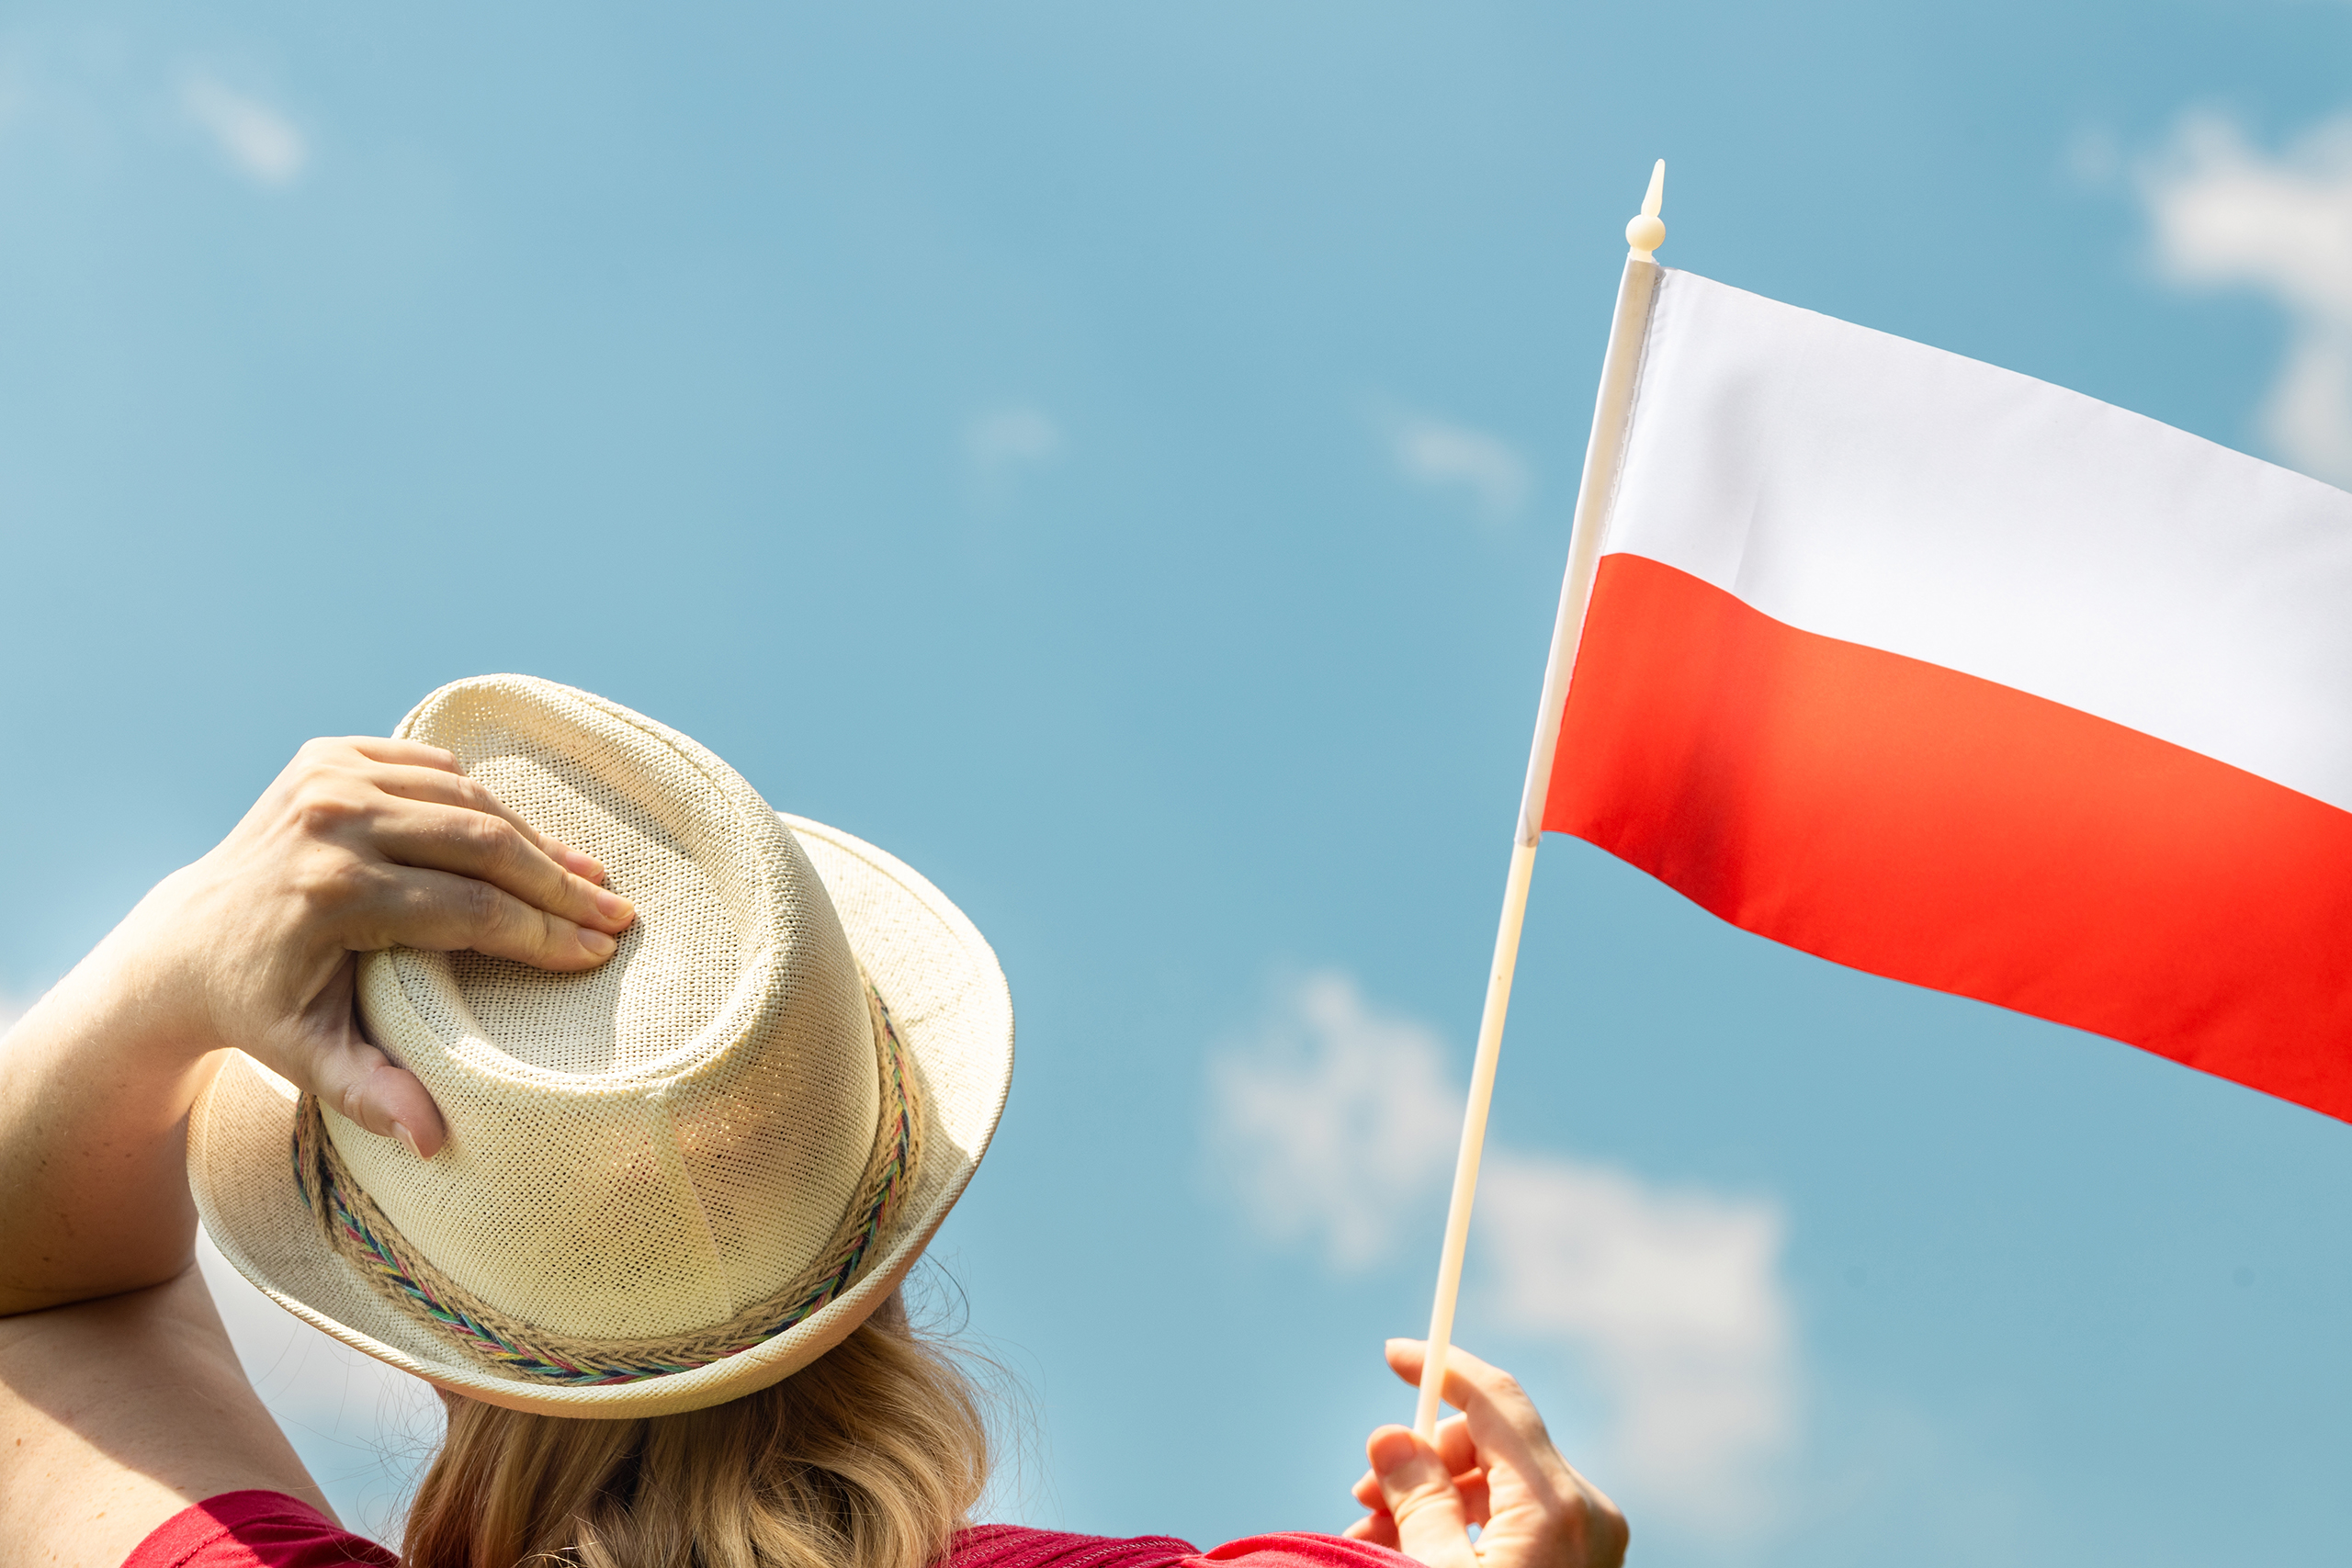 Национальная виза D в Польшу: виды, как получить, документы